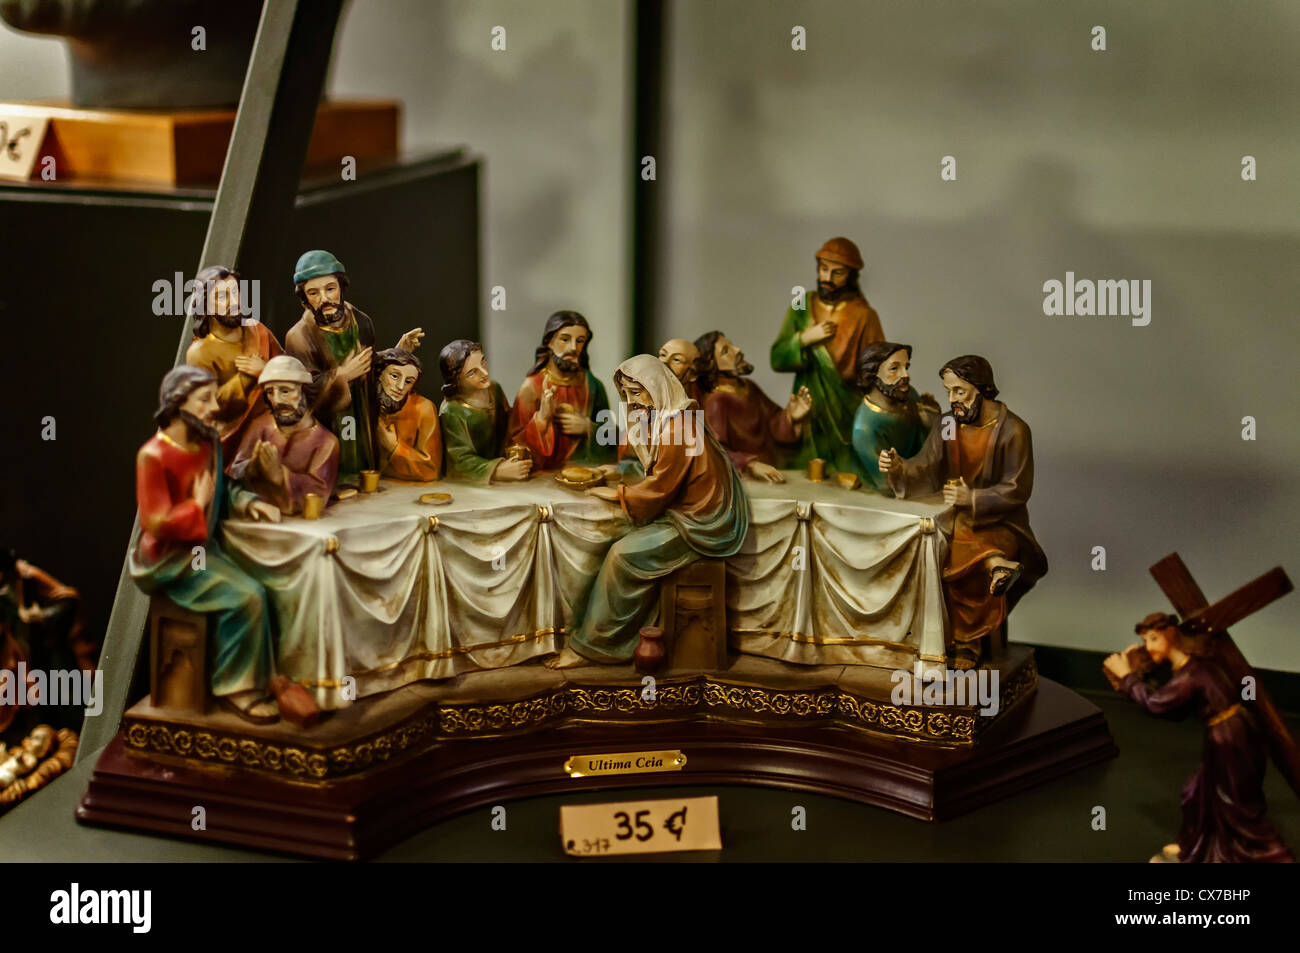 La scultura di Cristo e degli apostoli in un souvenir del sacramento, la bibbia della religione cristiana Foto Stock